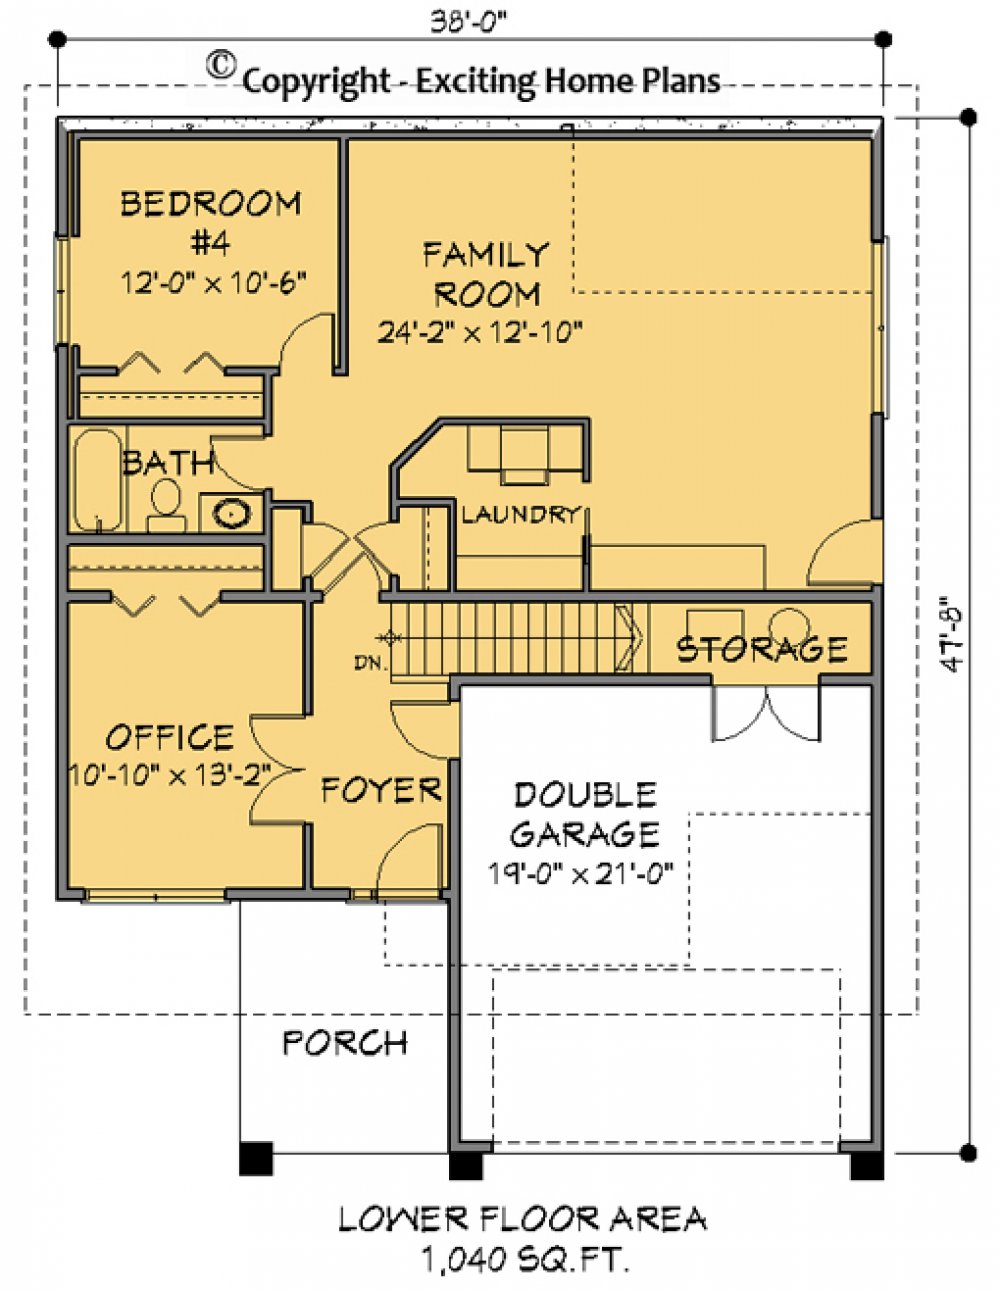 House Plan E1152-10M Upper Floor